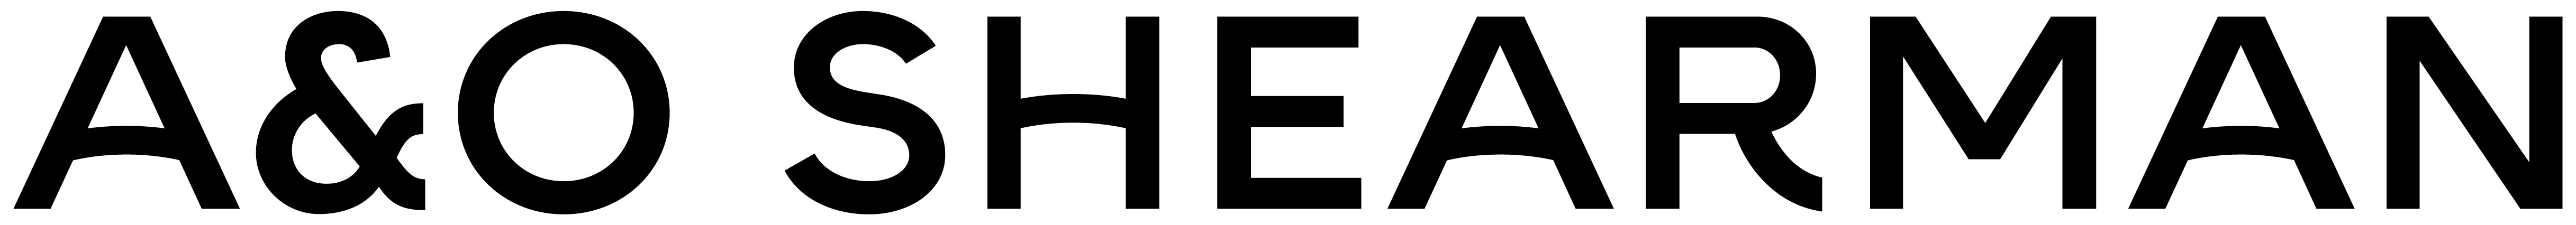 A&O SHEARMAN logo